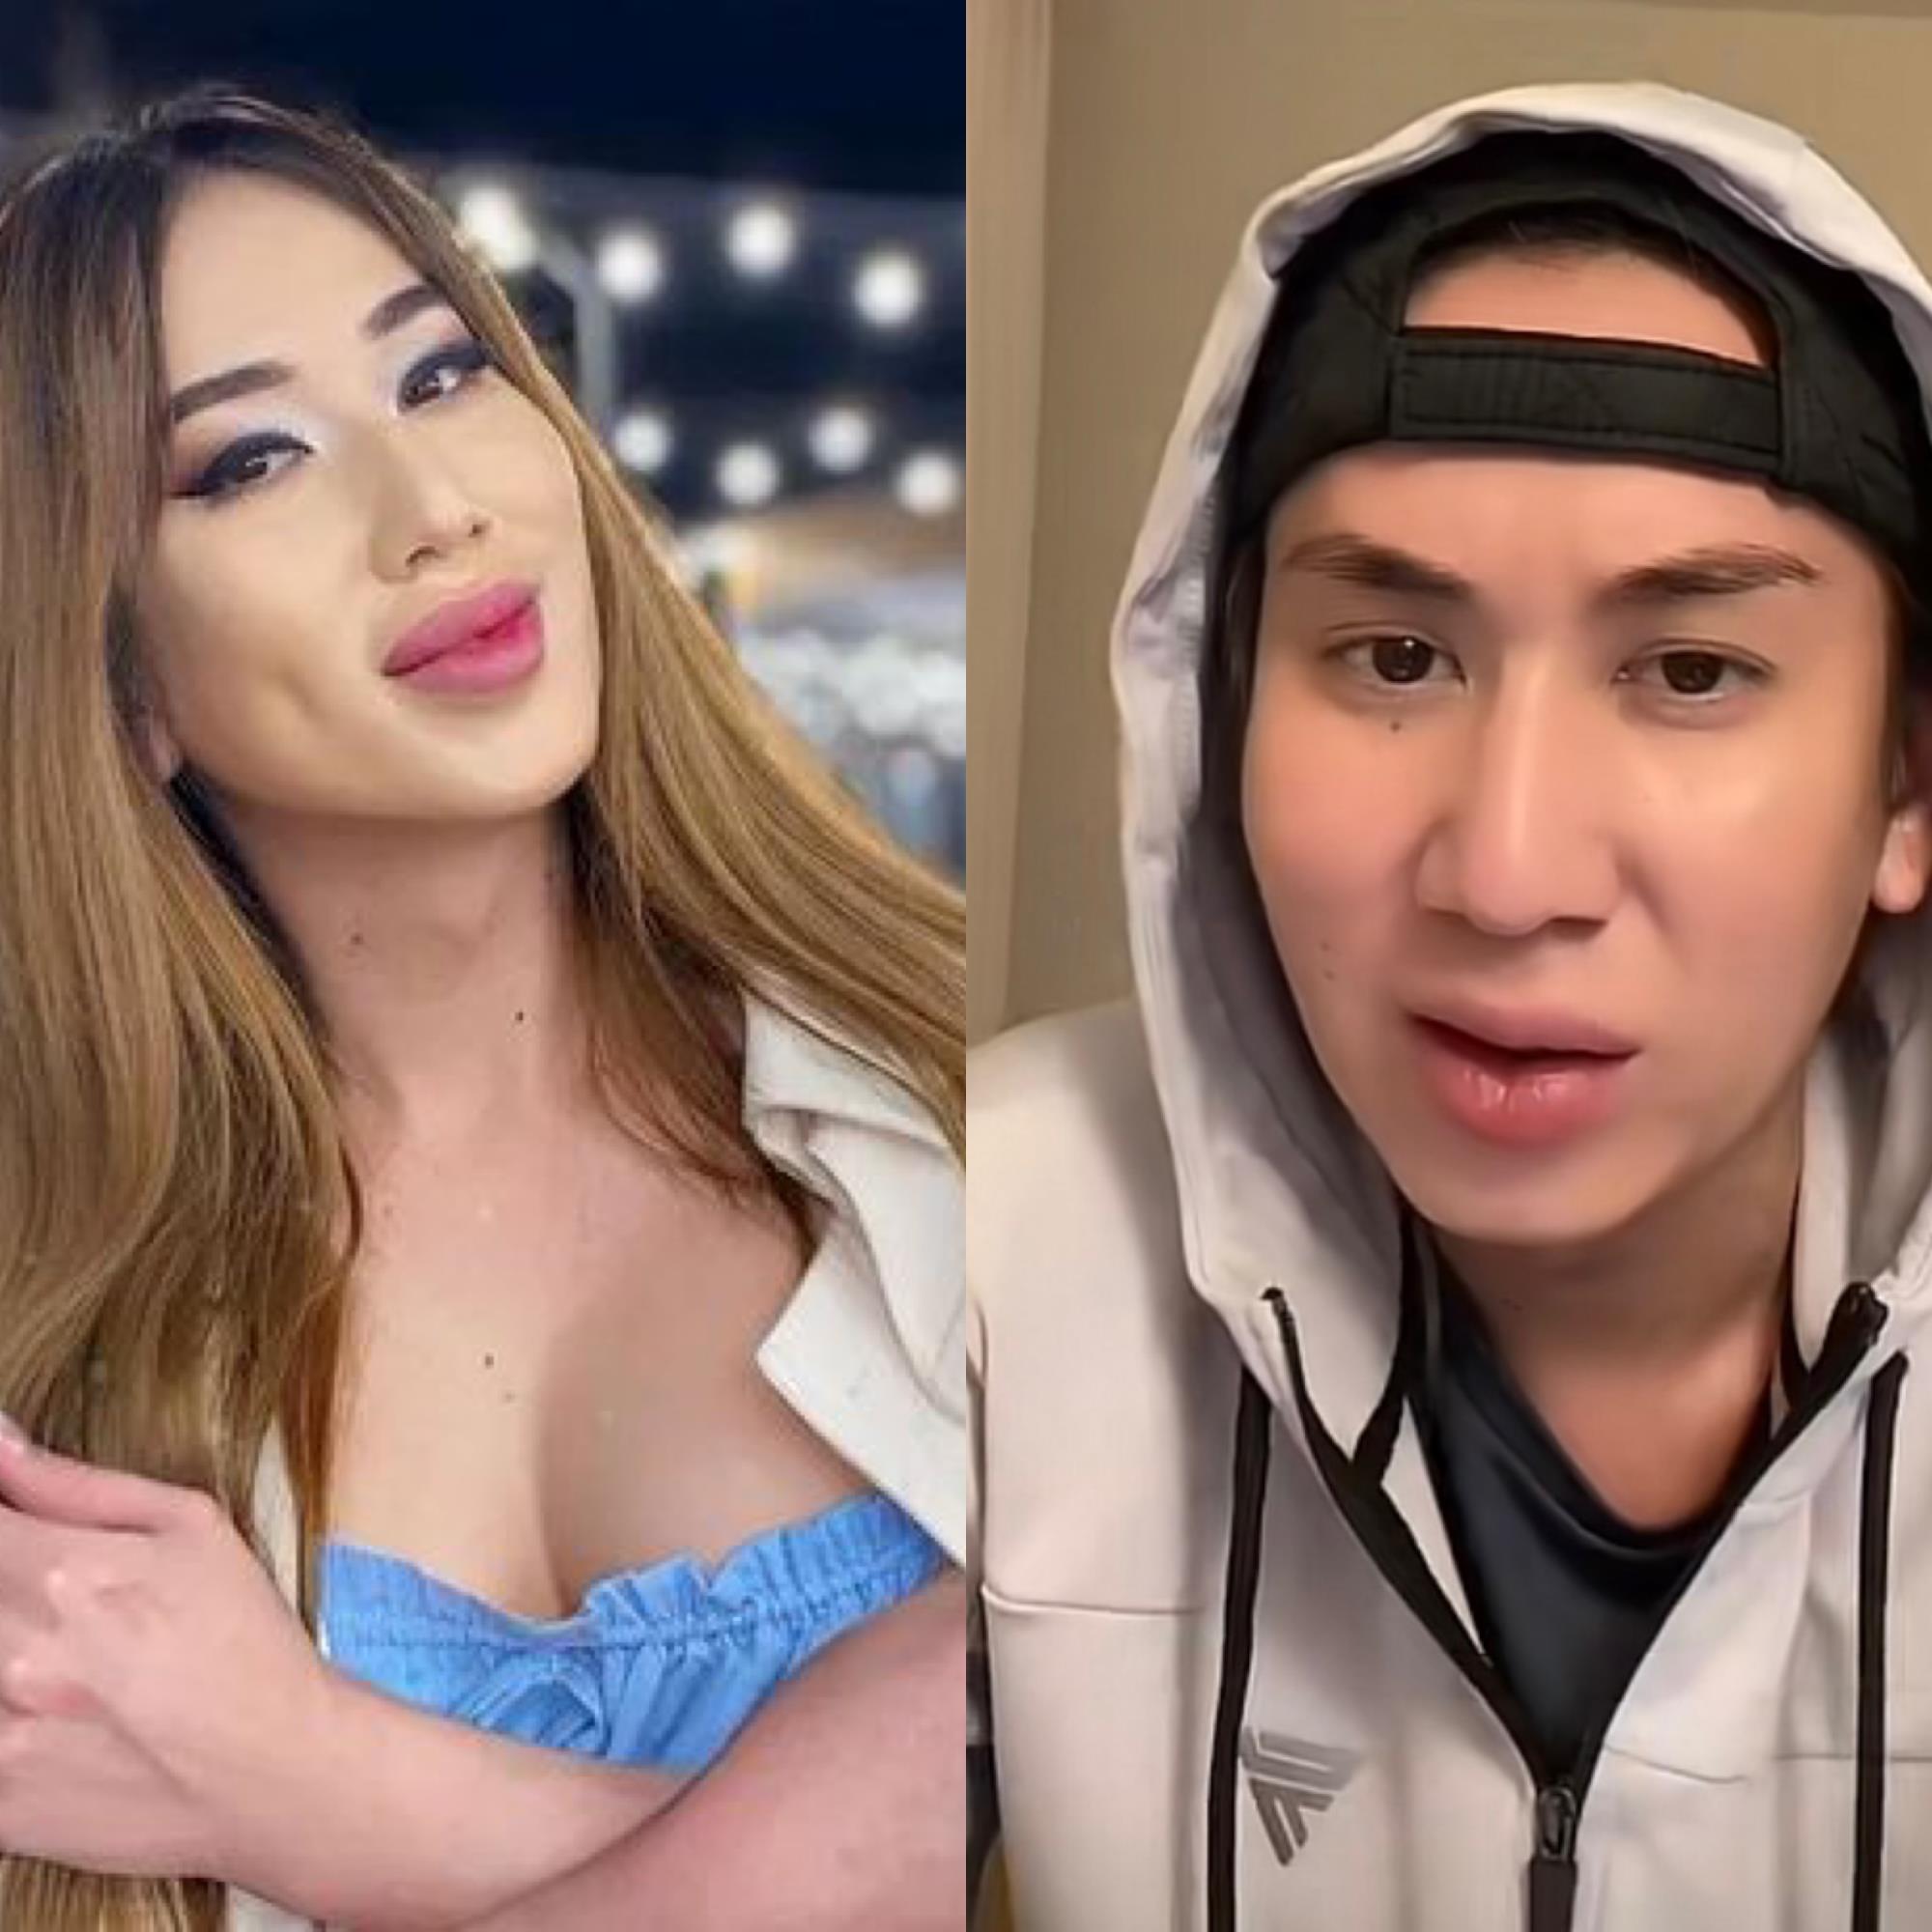 "Қолдаңдар": Трансгендер Амилай қайтадан еркекке айналды (ВИДЕО)